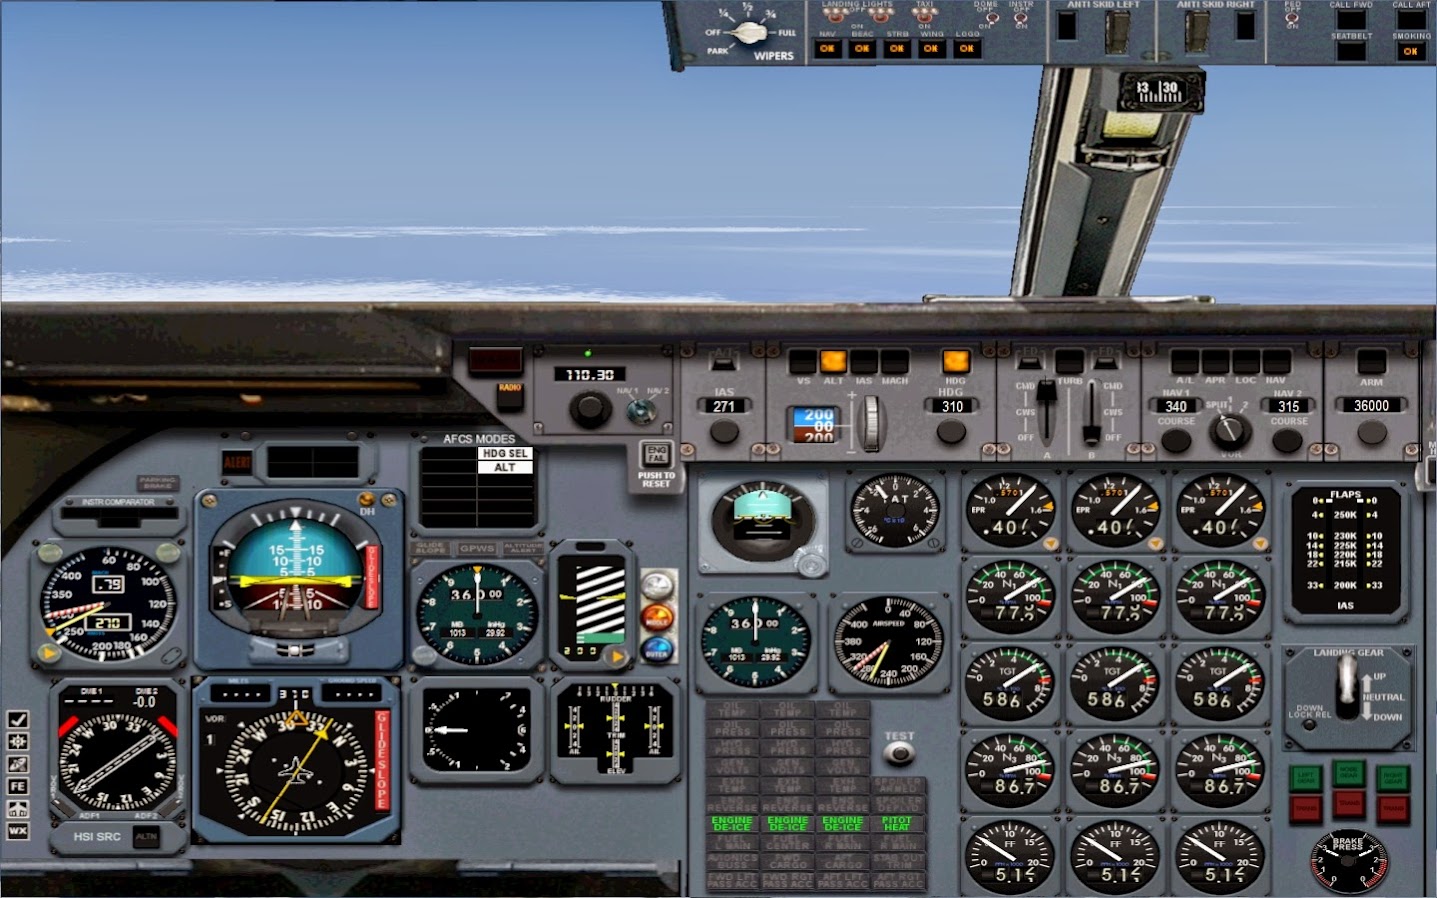 L-1011 cockpit instrument readings